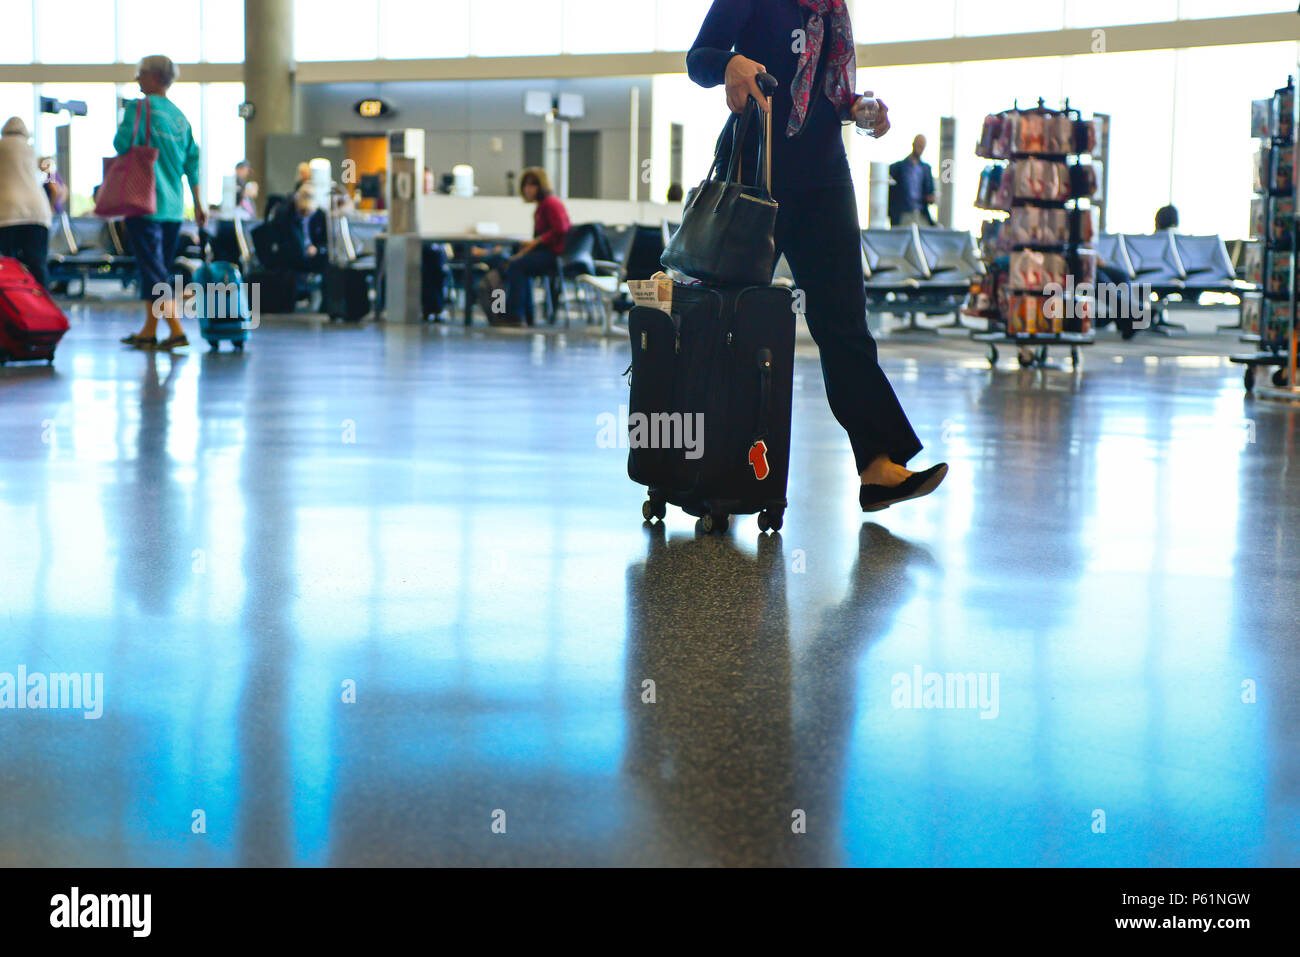 Una vista di persone, una donna dal collo in giù, rendendo il loro modo attraverso il terminal di un aeroporto con piani riflettenti, tirando bagagli da e per il Foto Stock